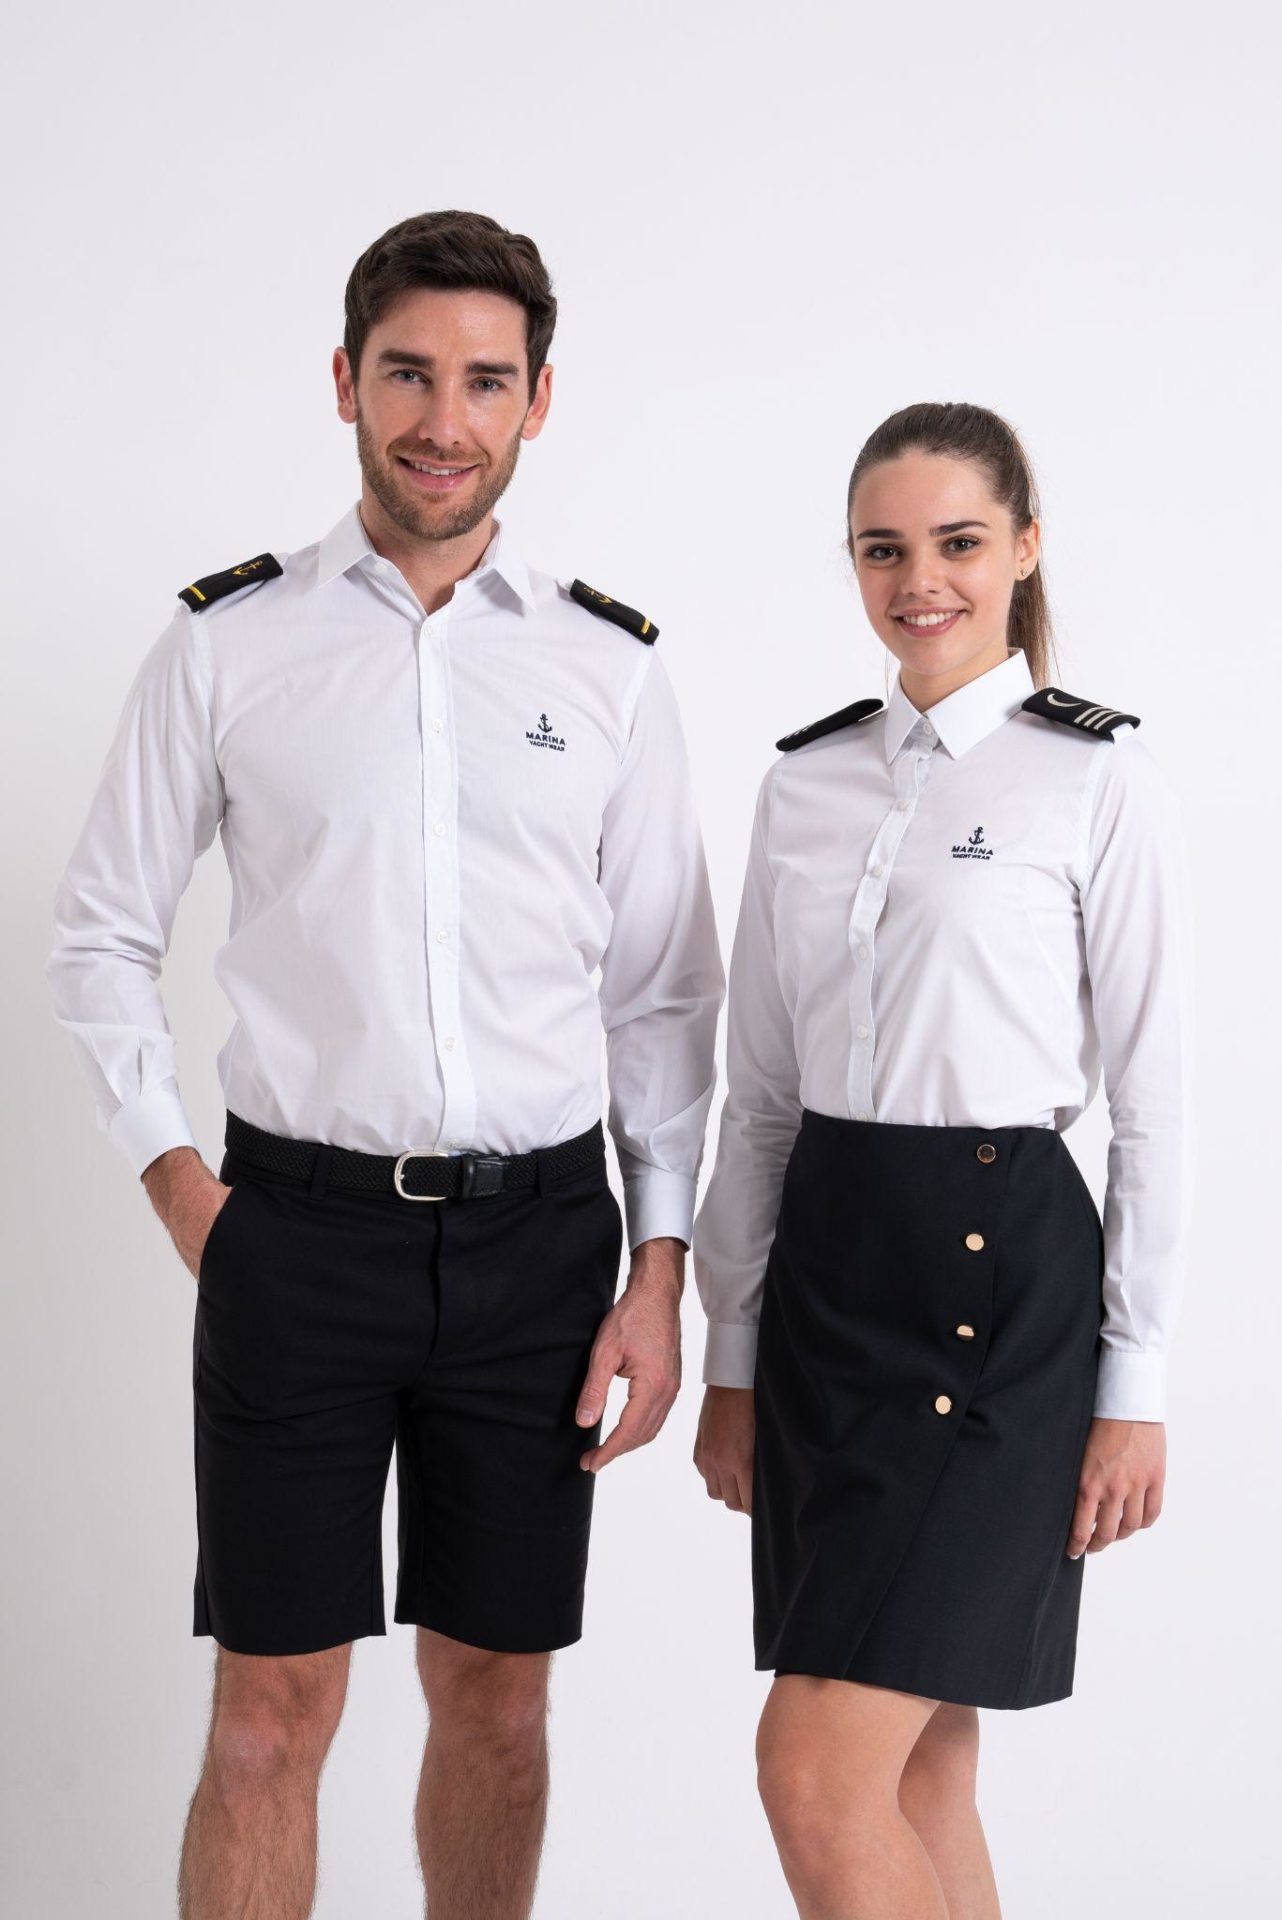 yacht uniforms Saint-Tropez